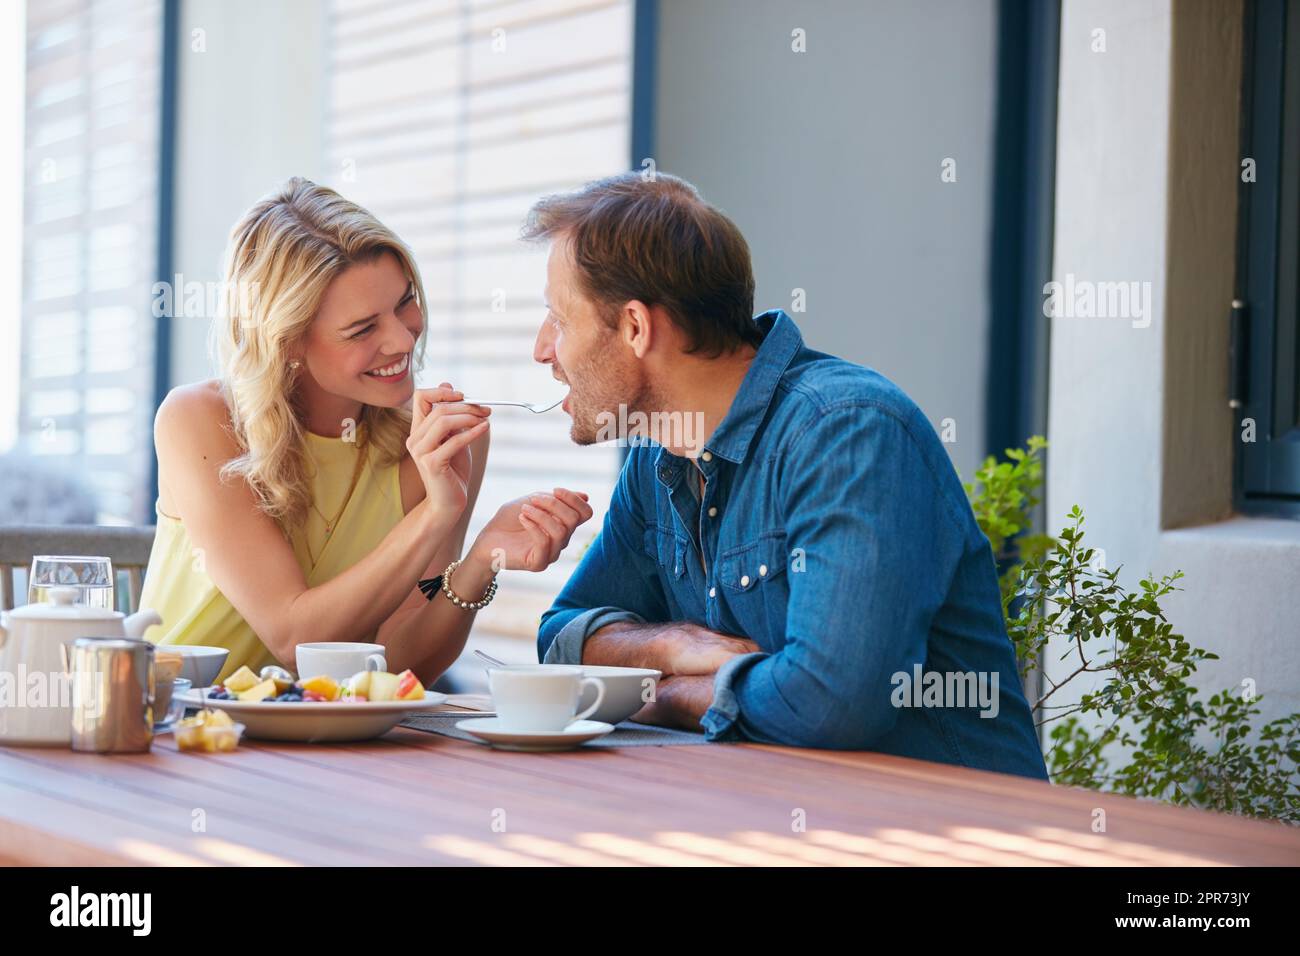 Schreckt Ihr mich auf? Aufnahme einer glücklichen jungen Frau, die ihrem Mann einen Vorgeschmack auf ihr Essen gab. Stockfoto